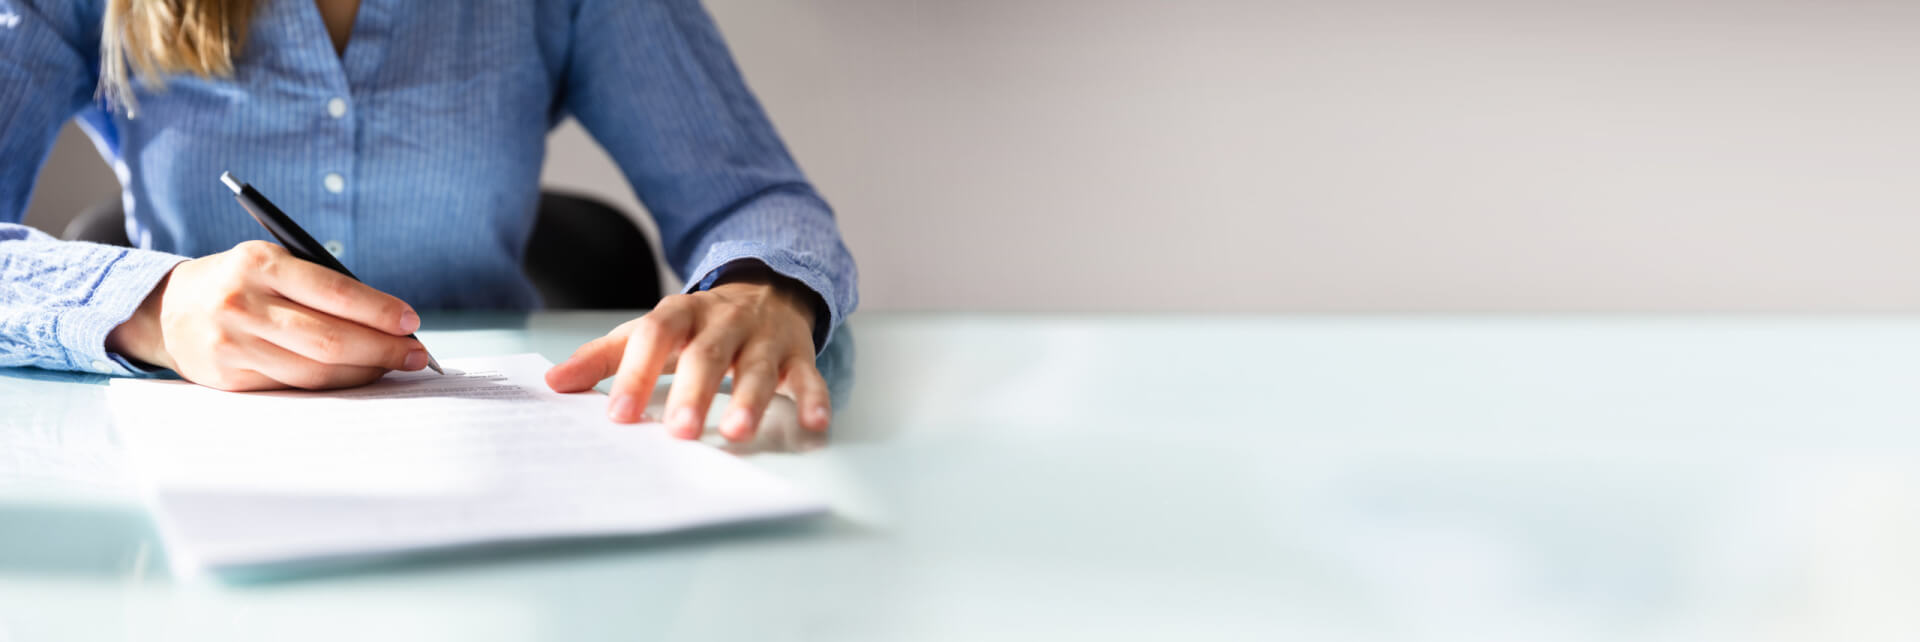 En la imagen, una mujer adulta que ostenta un alto cargo gubernamental firma un documento sobre políticas de empleo. Es un plano corto de las manos de la mujer en una mesa y un documentoi.